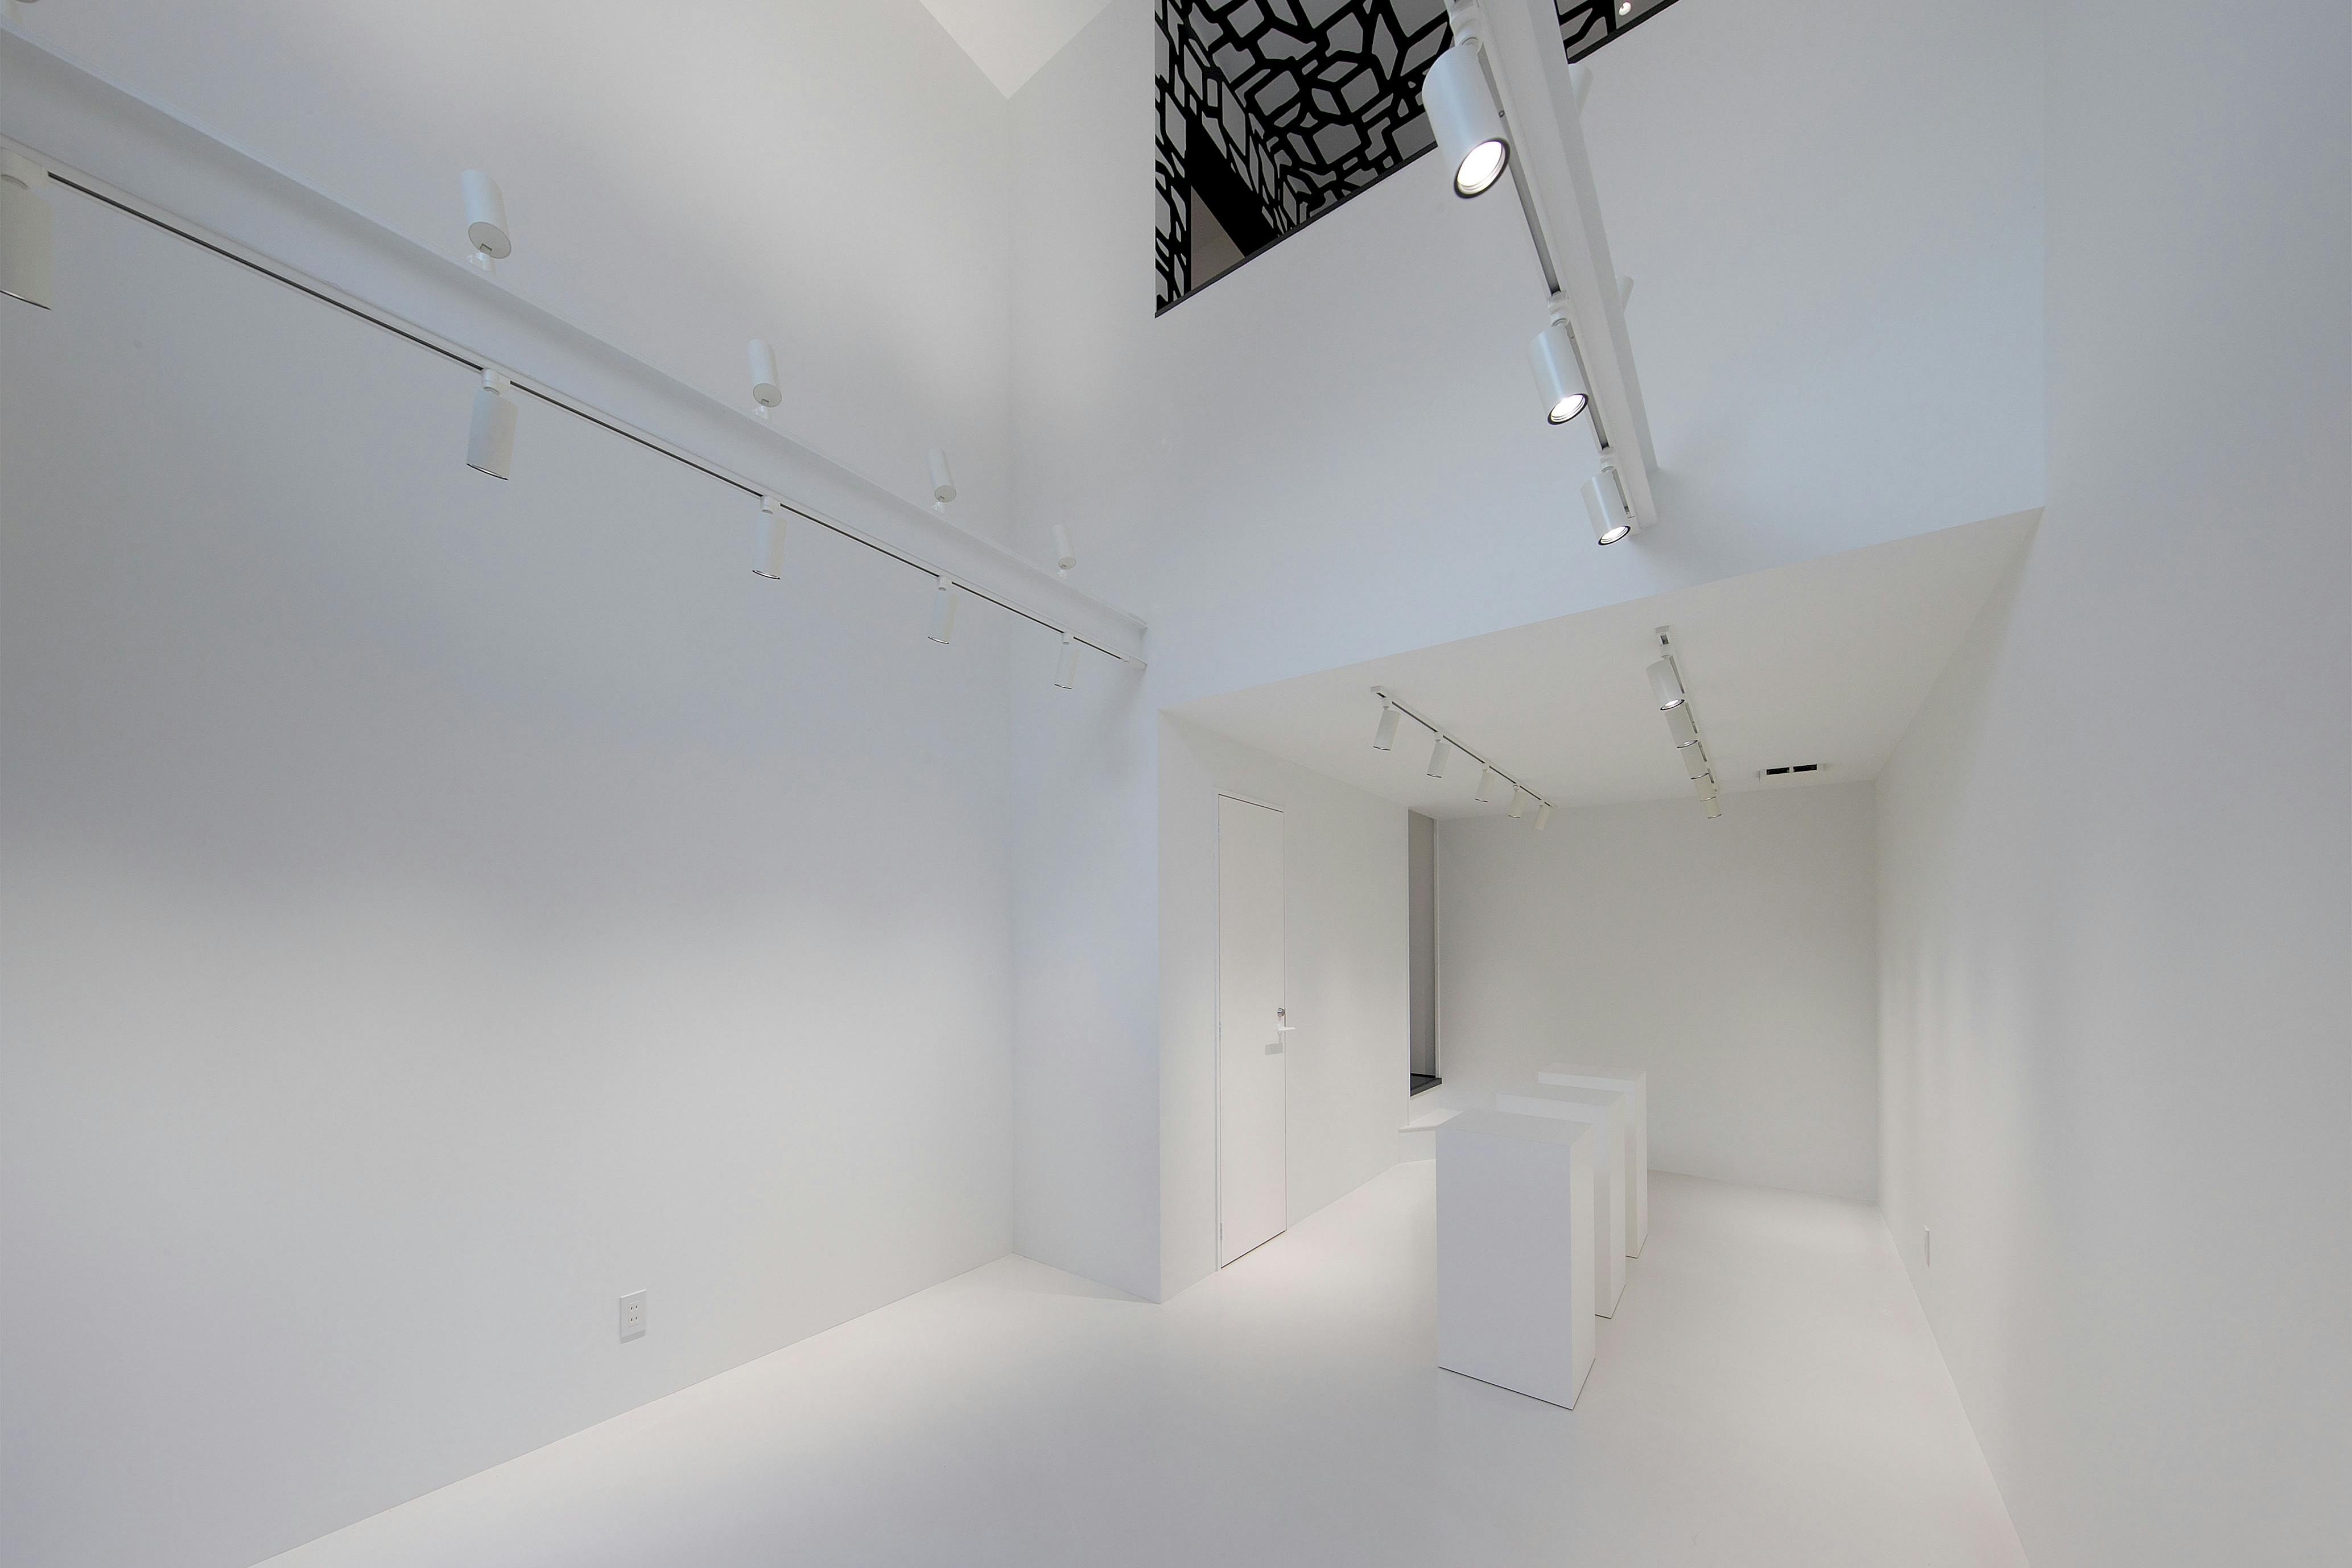 床も壁も真っ白なギャラリーとなっており、吹き抜け構造になっているため天井が高く、インスタレーションなどに適しています。